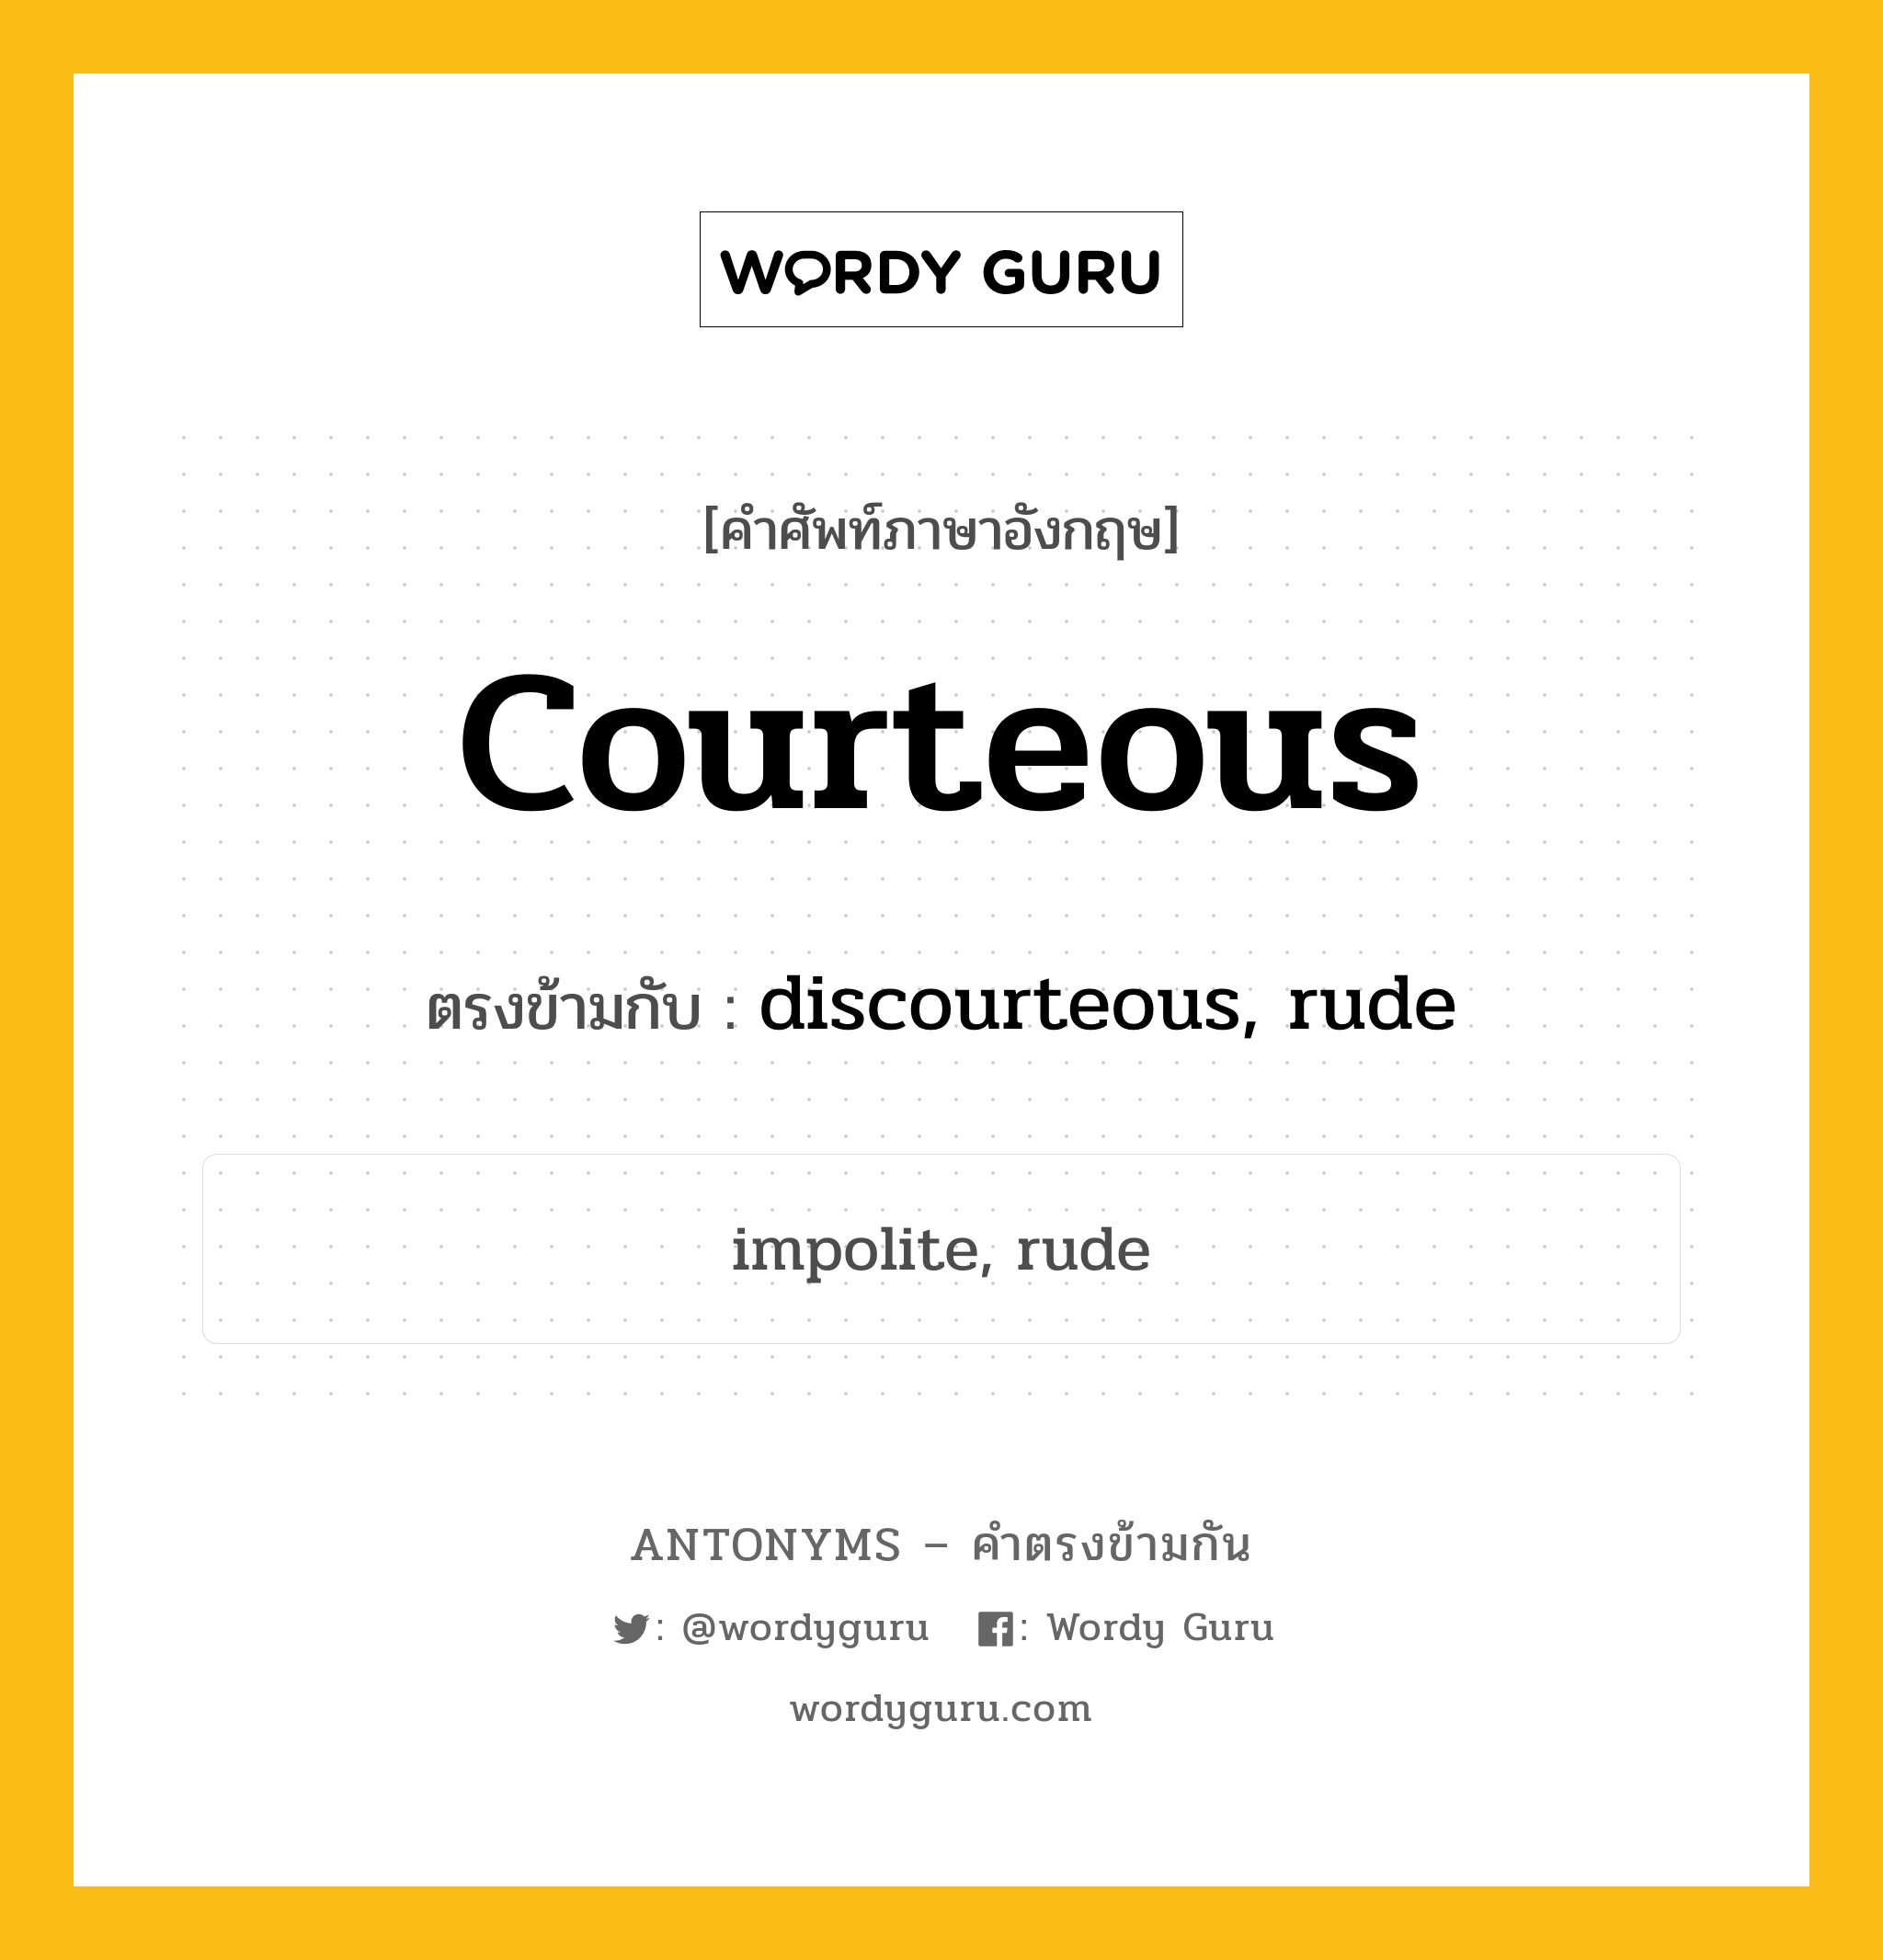 courteous เป็นคำตรงข้ามกับคำไหนบ้าง?, คำศัพท์ภาษาอังกฤษ courteous ตรงข้ามกับ discourteous, rude หมวด discourteous, rude